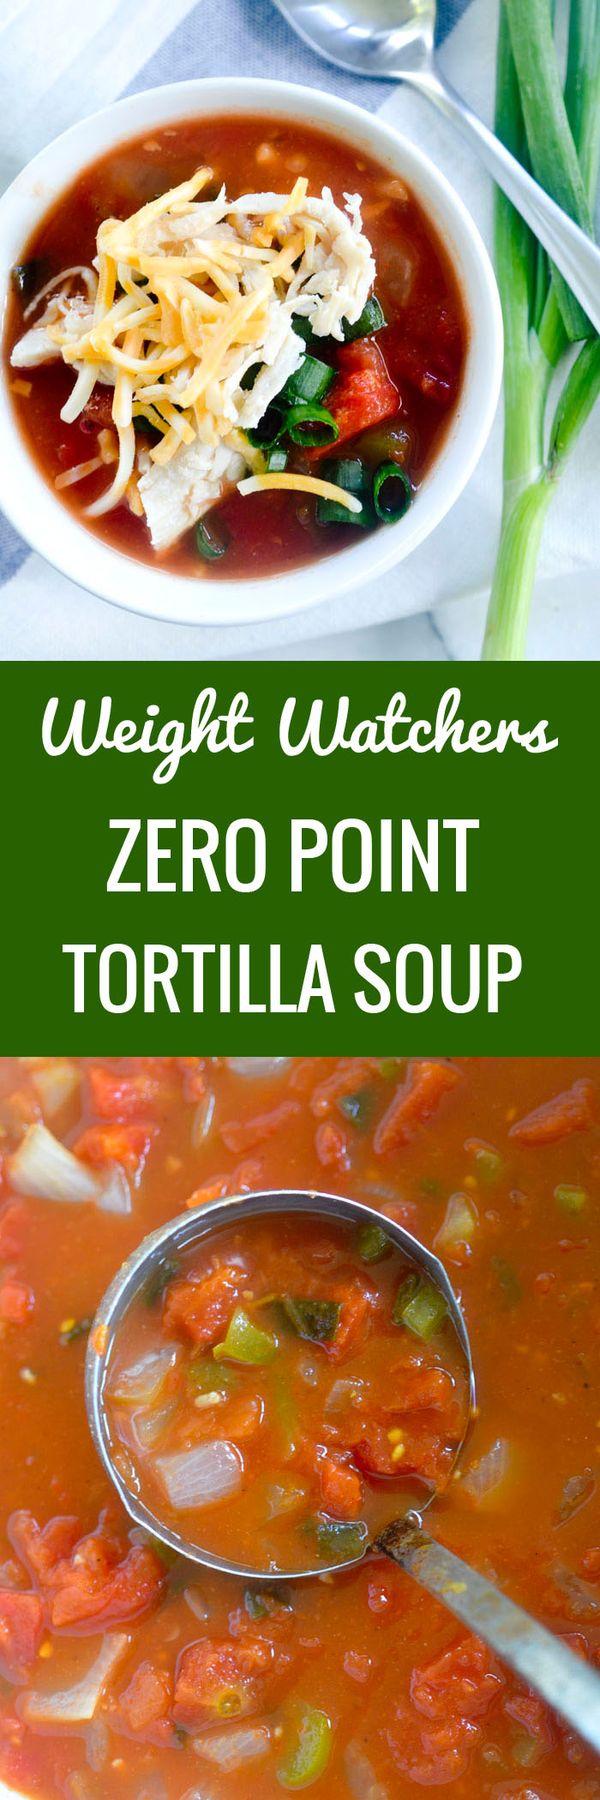 Weight Watchers Zero Point Tortilla Soup